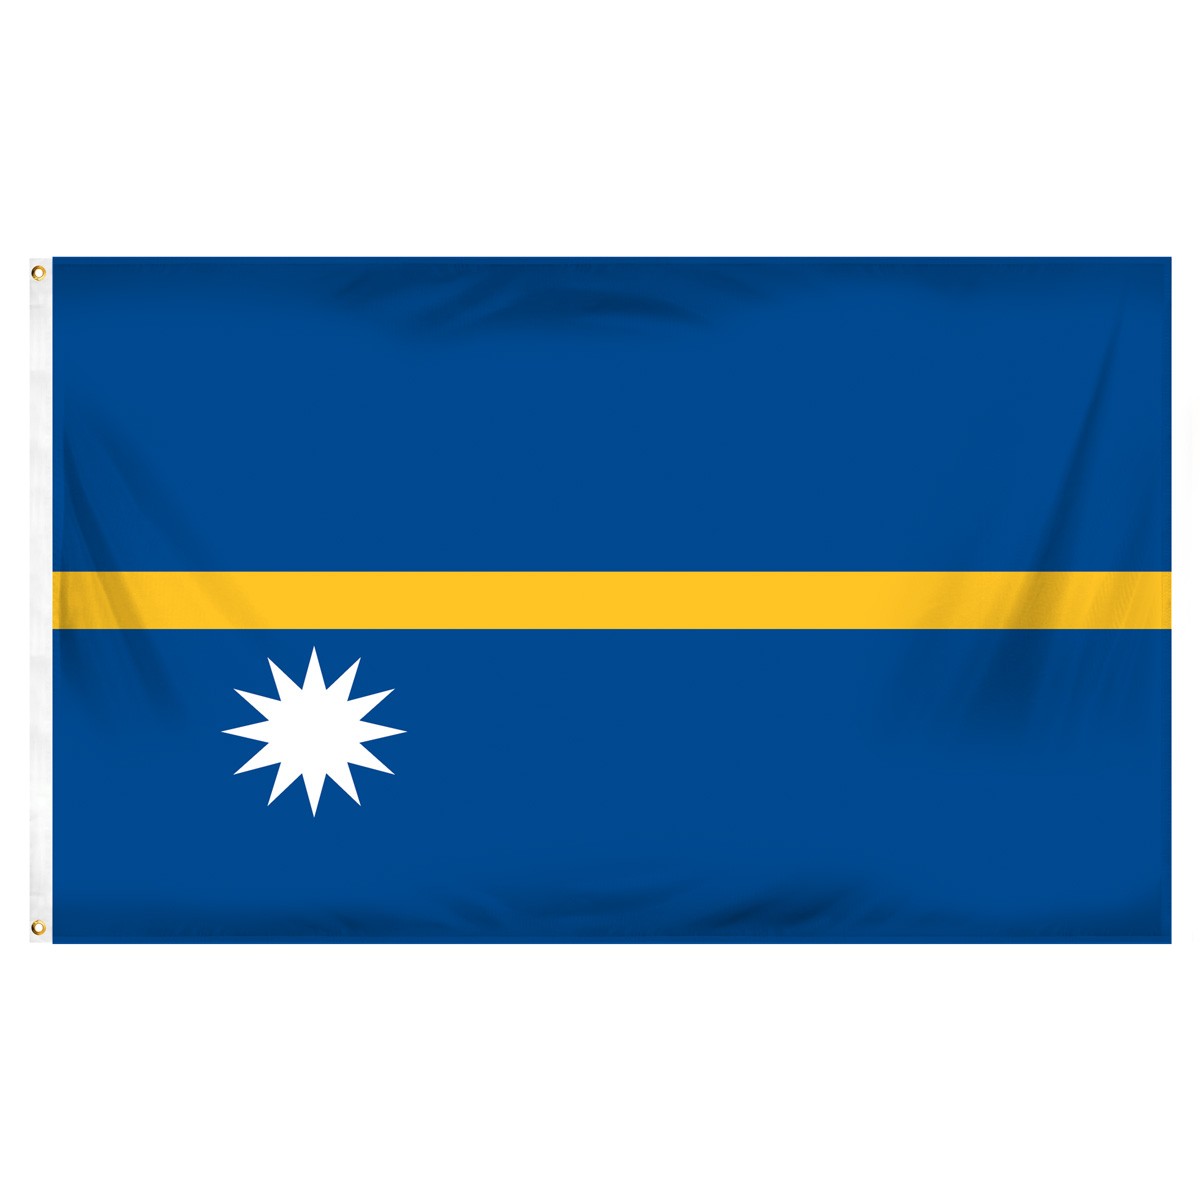 Nauru Triangle Flags and Pennants